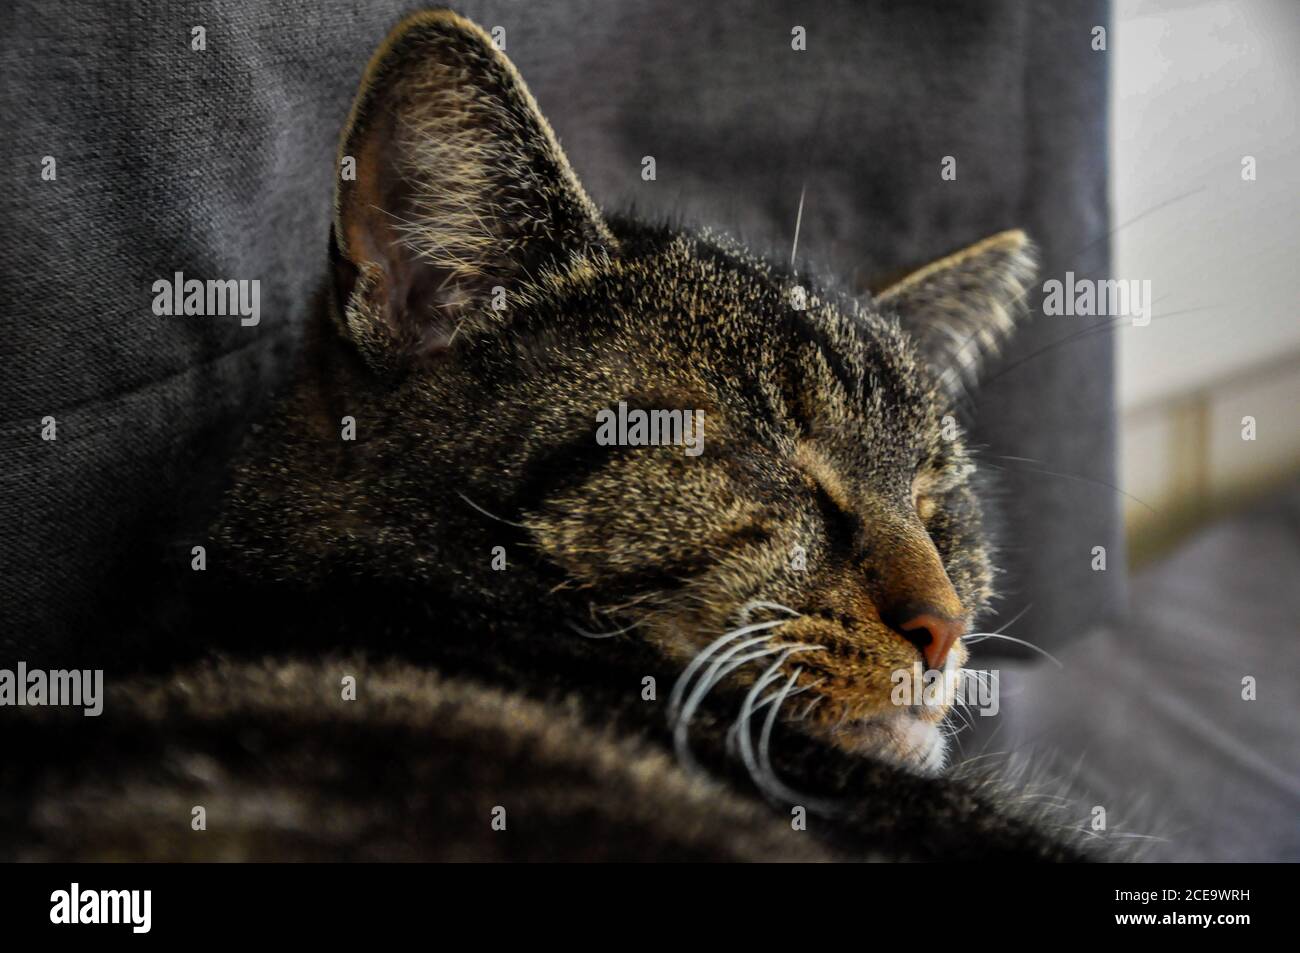 Closeup shot of a cute cat Stock Photo